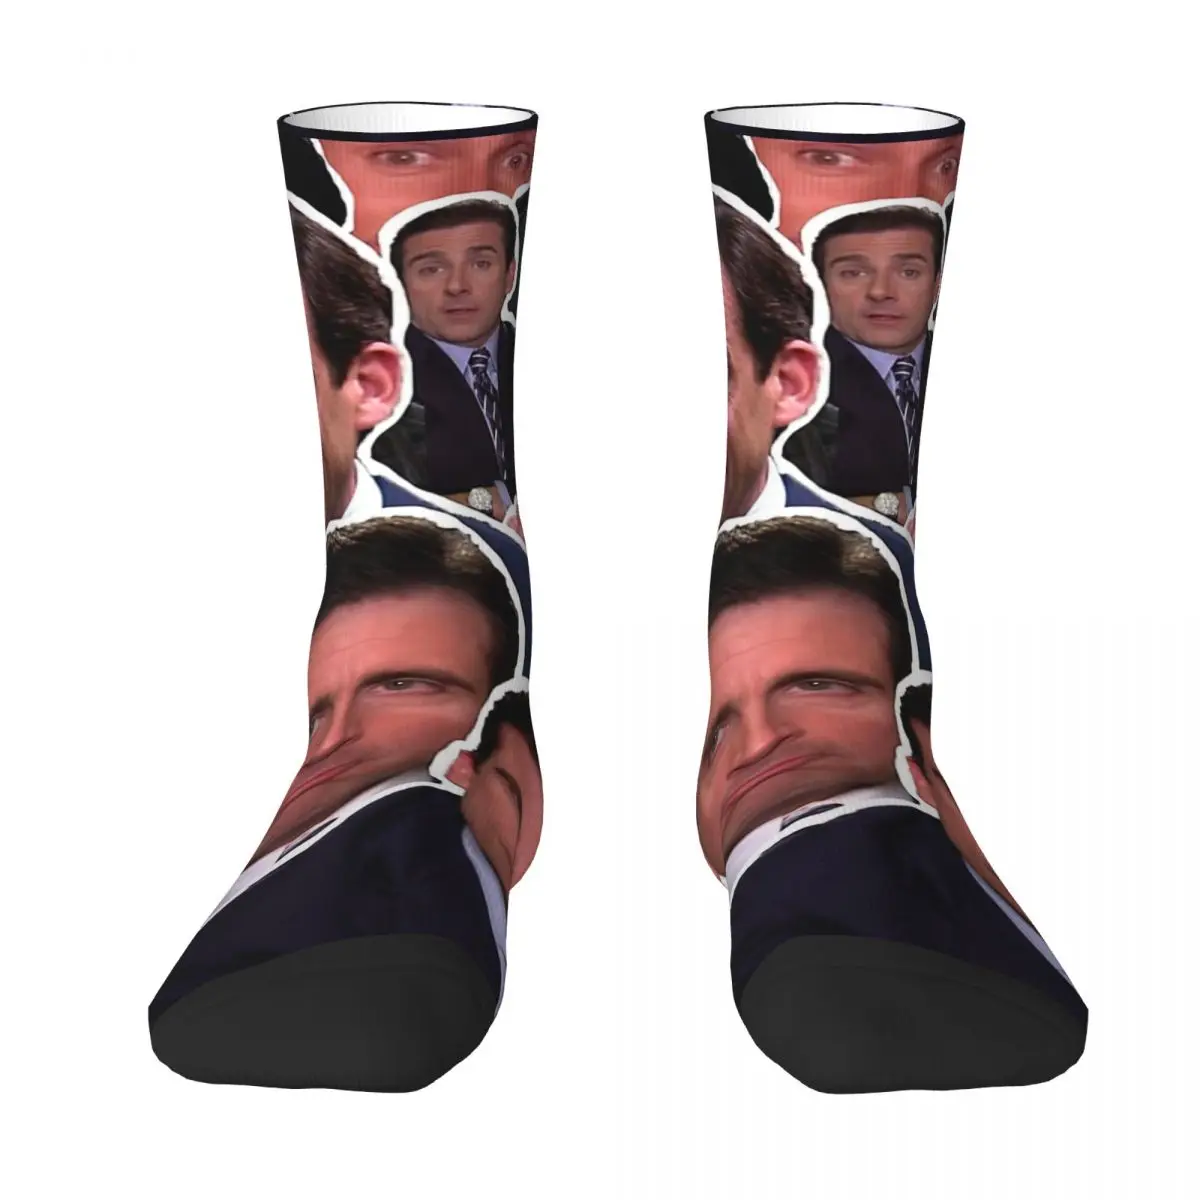 Michael Scott - The Office Collage Adult Socks,Unisex socks,men Socks women Socks